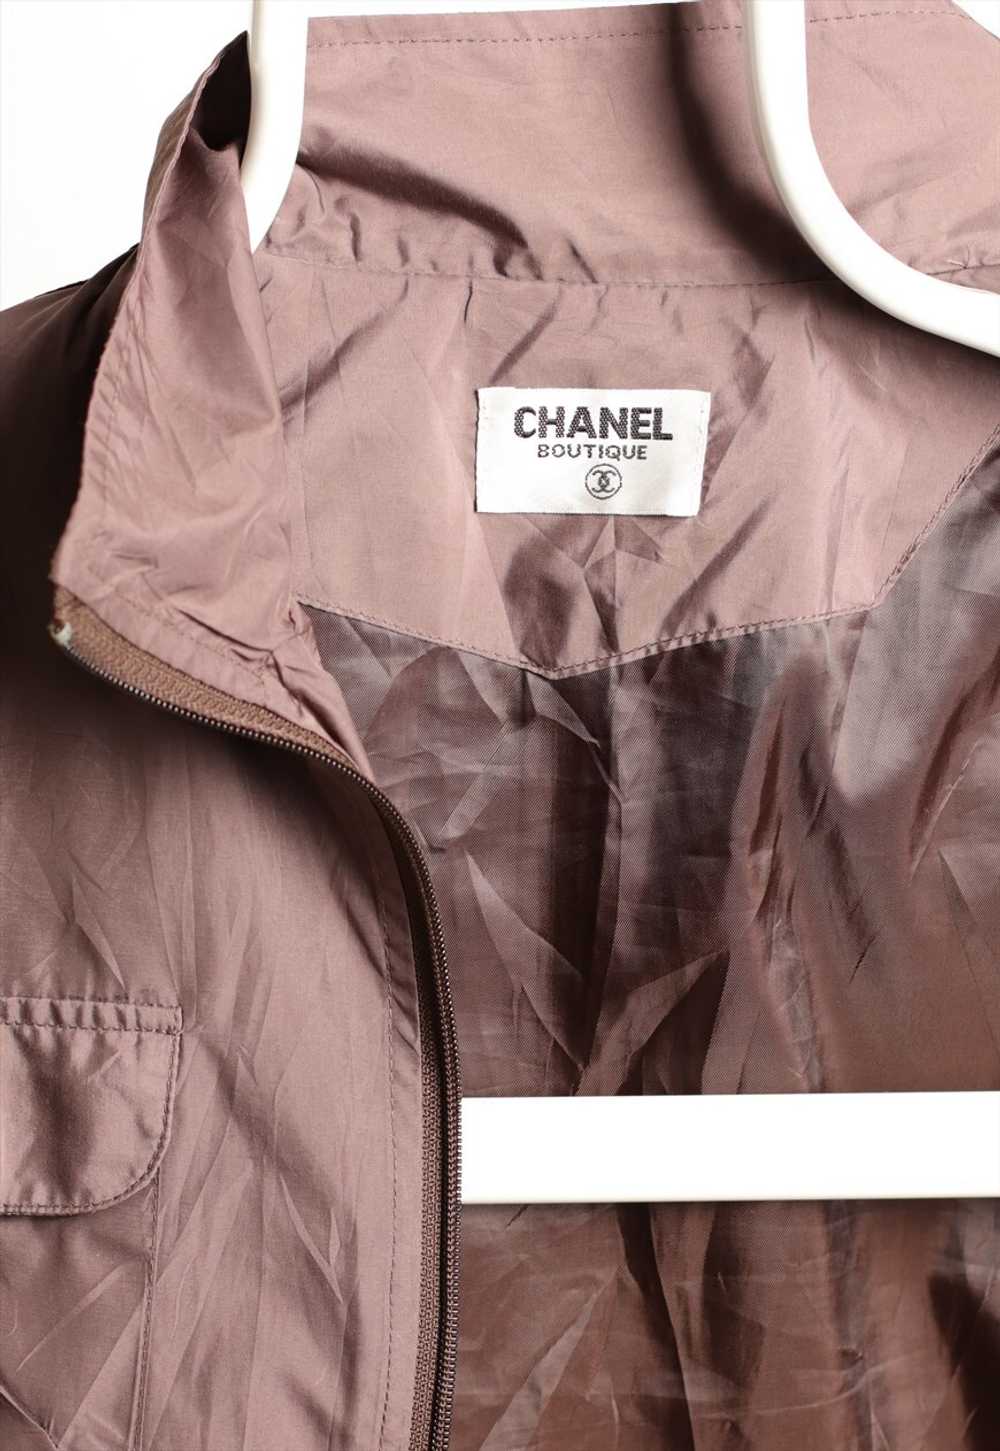 Chanel Boutique Vintage Authentic Sport Jacket Br… - image 3